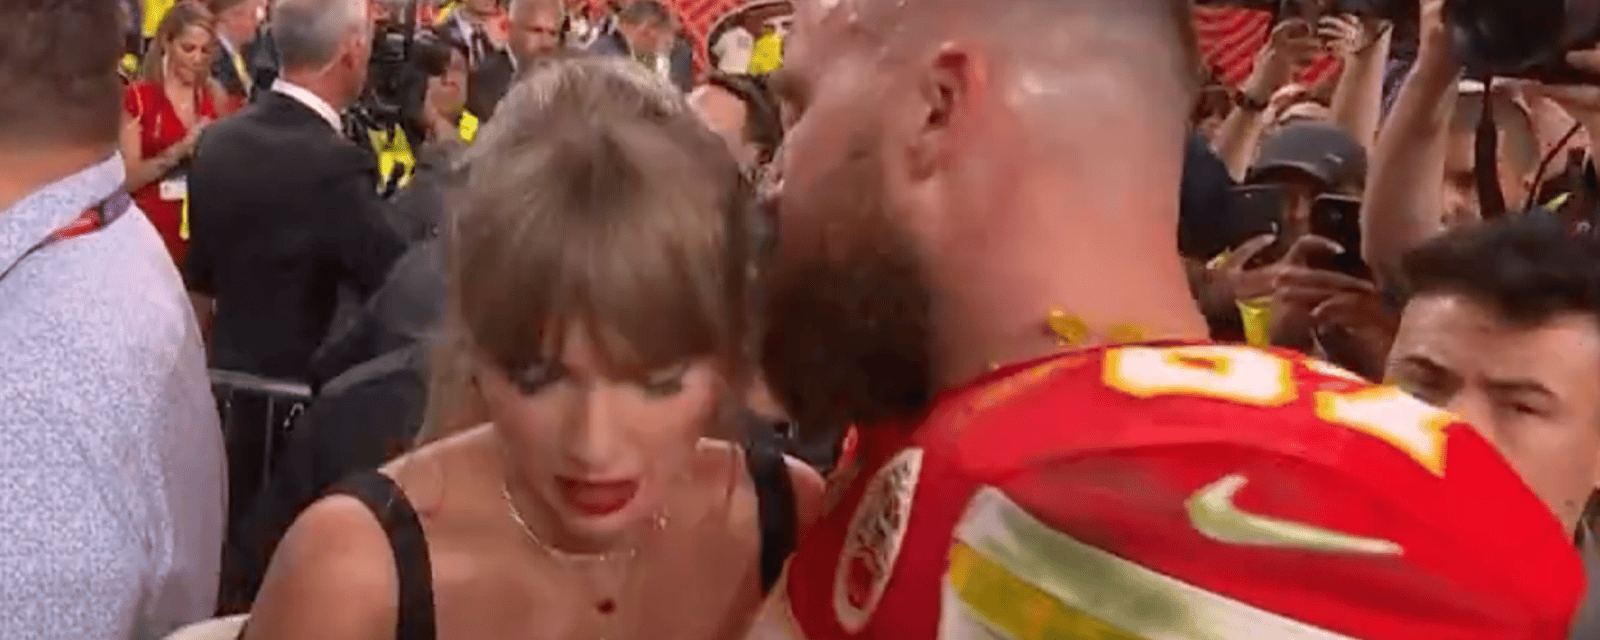 Des internautes s'inquiètent pour Taylor Swift après l'excès de colère de Travis Kelce au Super Bowl